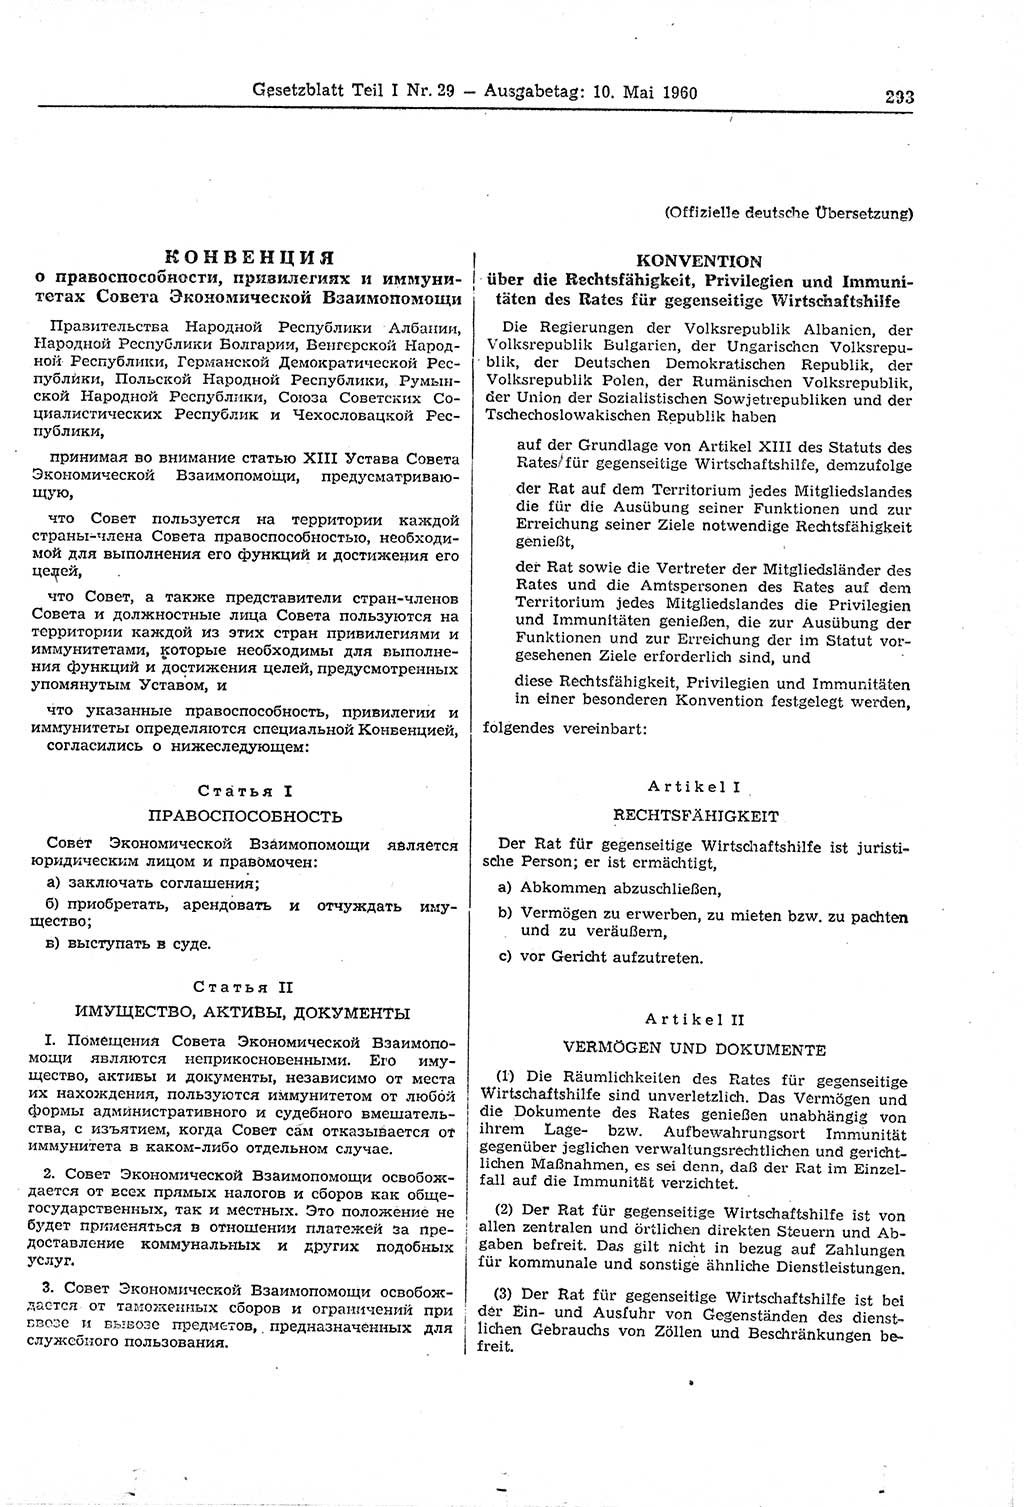 Gesetzblatt (GBl.) der Deutschen Demokratischen Republik (DDR) Teil Ⅰ 1960, Seite 293 (GBl. DDR Ⅰ 1960, S. 293)